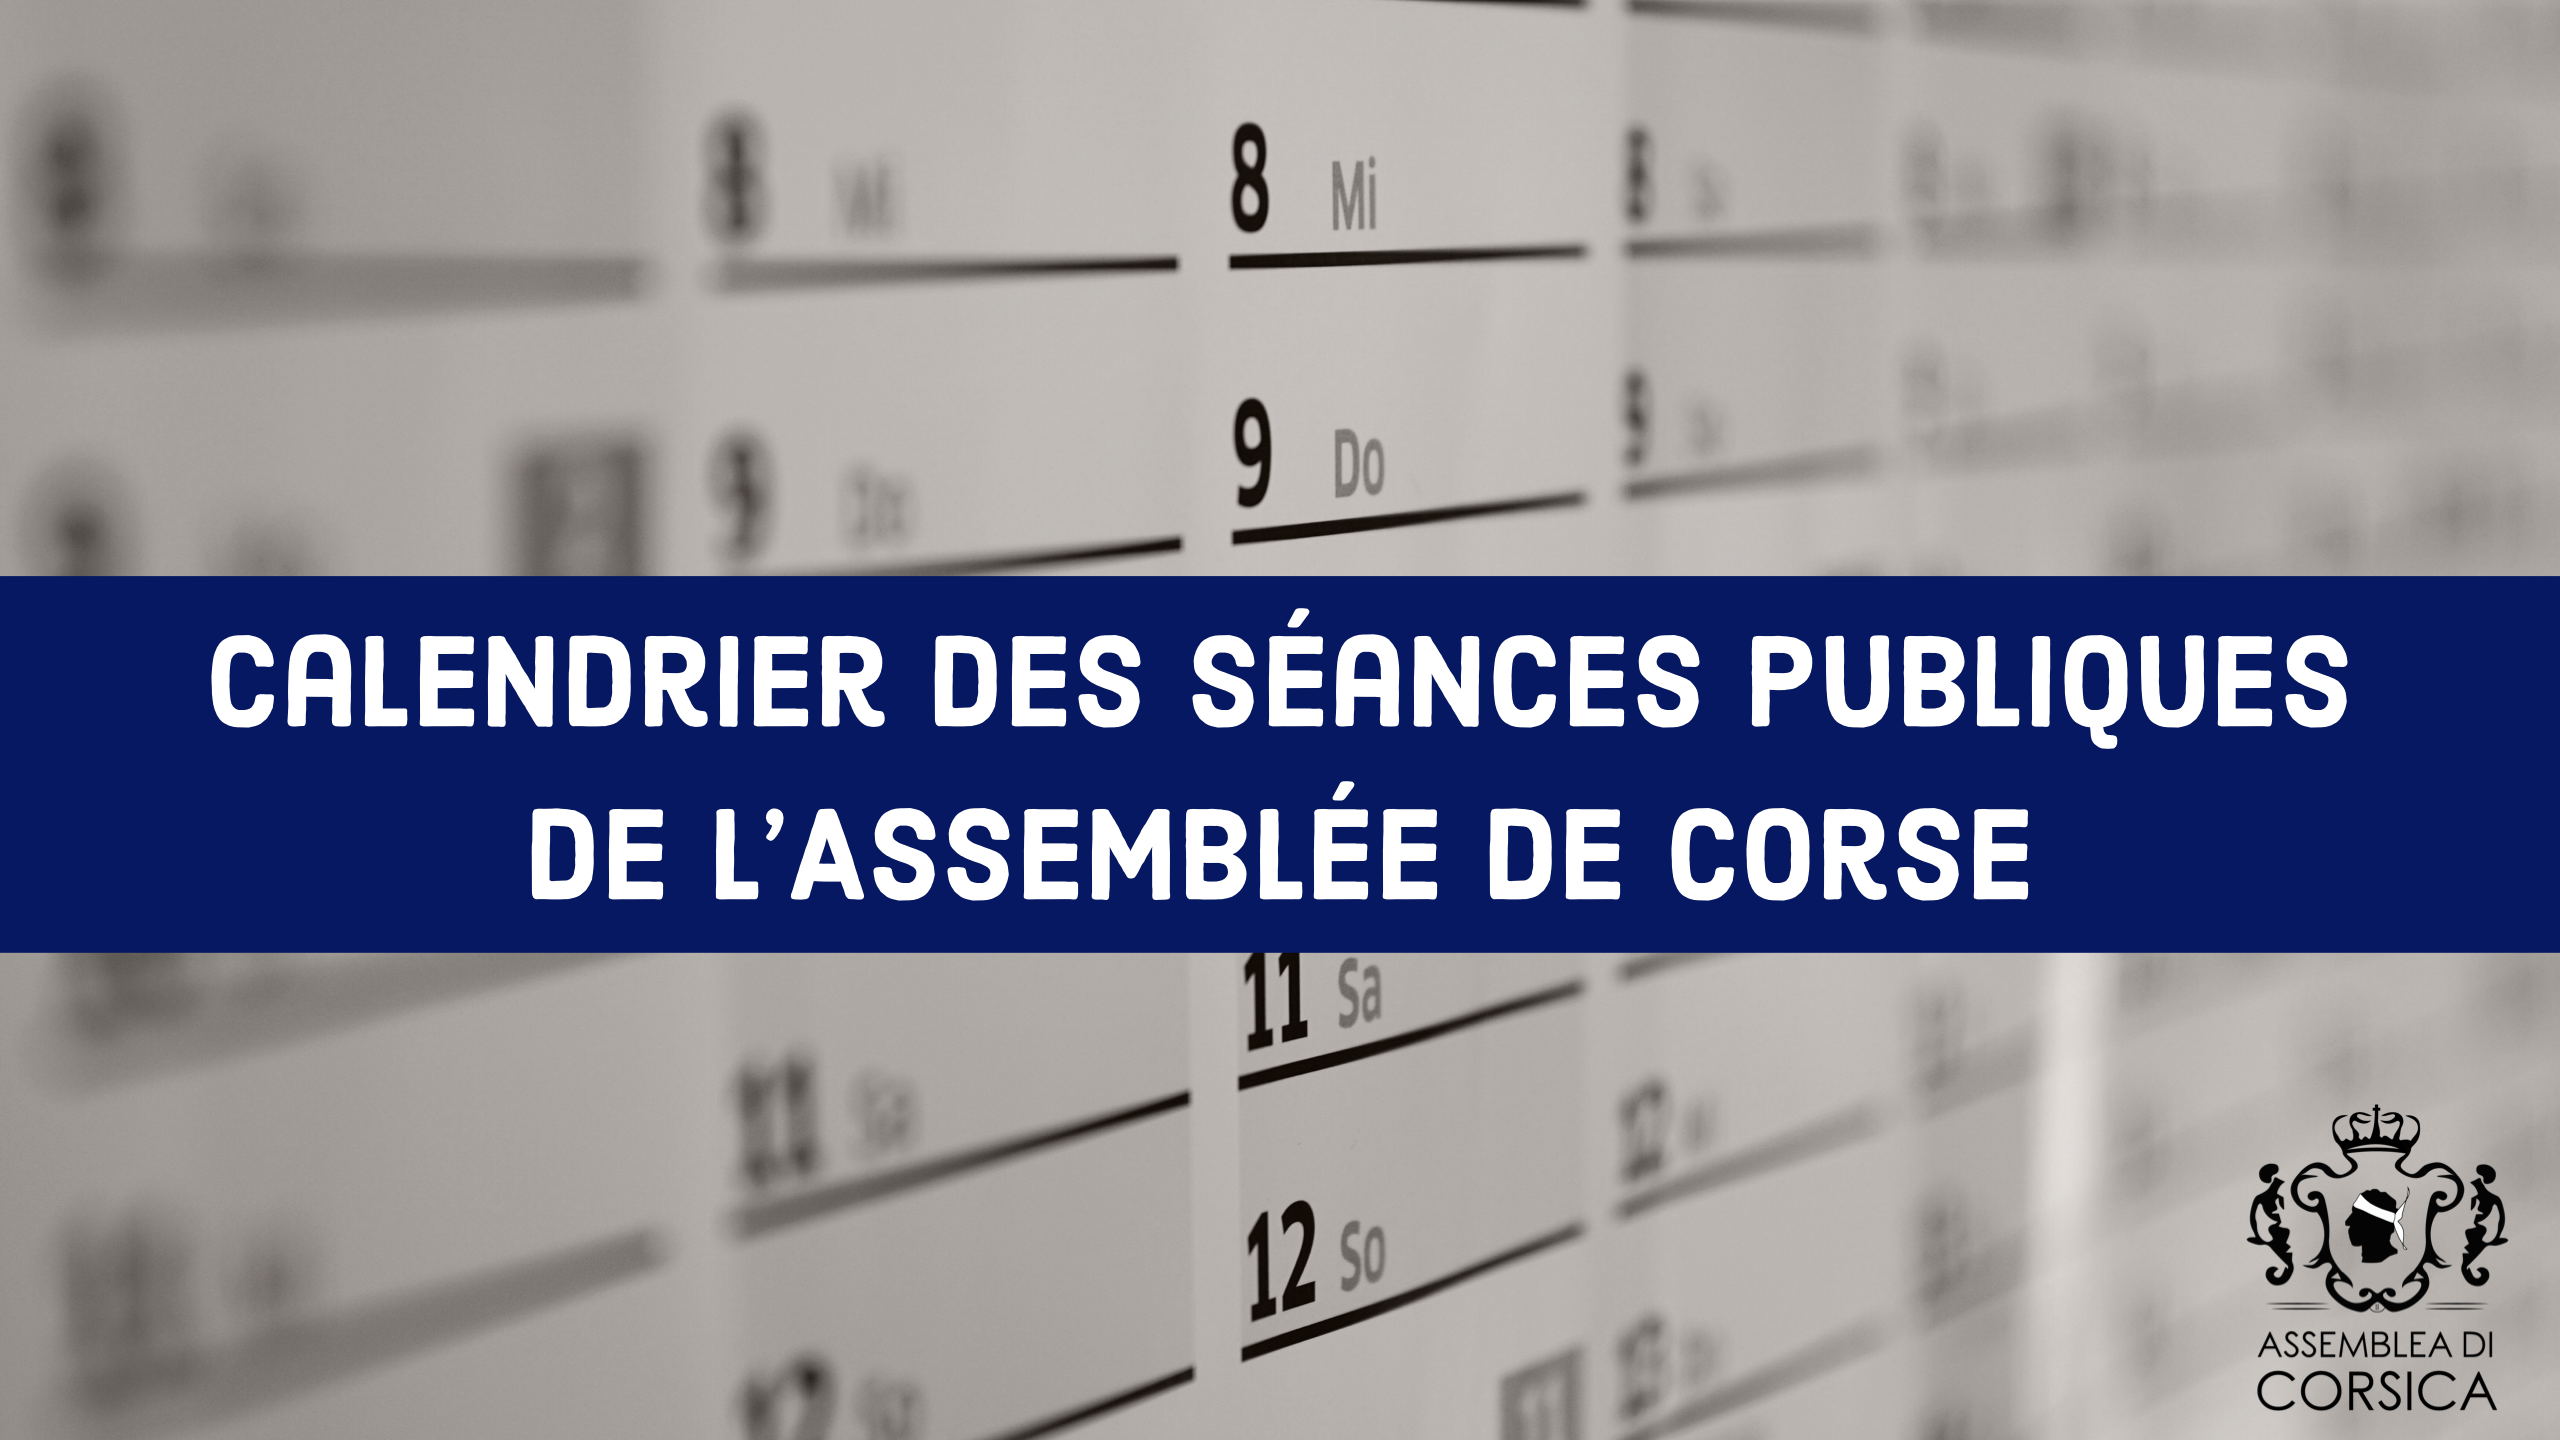 Calendrier prévisionnel des séances publiques de l'Assemblée de Corse